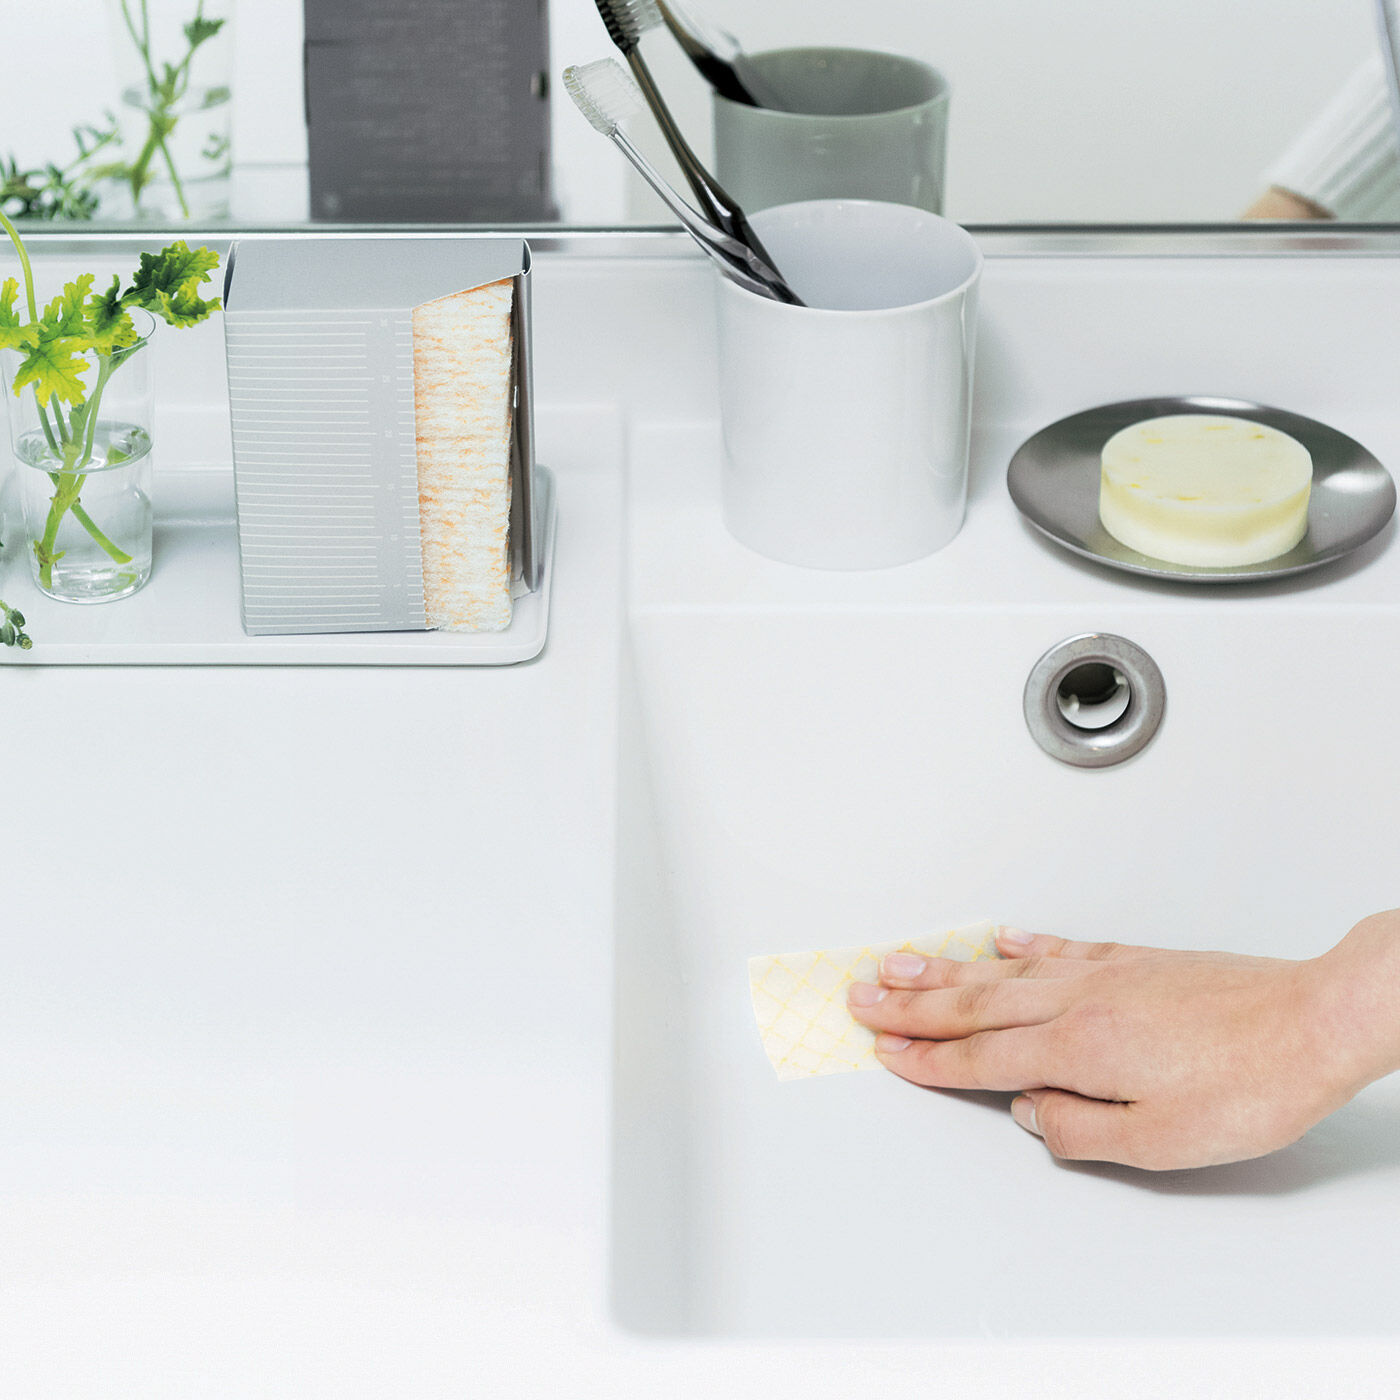 フェリシモの雑貨Kraso|1/d for Washstand 洗面台用ミニワイプの会|歯みがきついでのひとふきで気持ちよさ続く洗面台